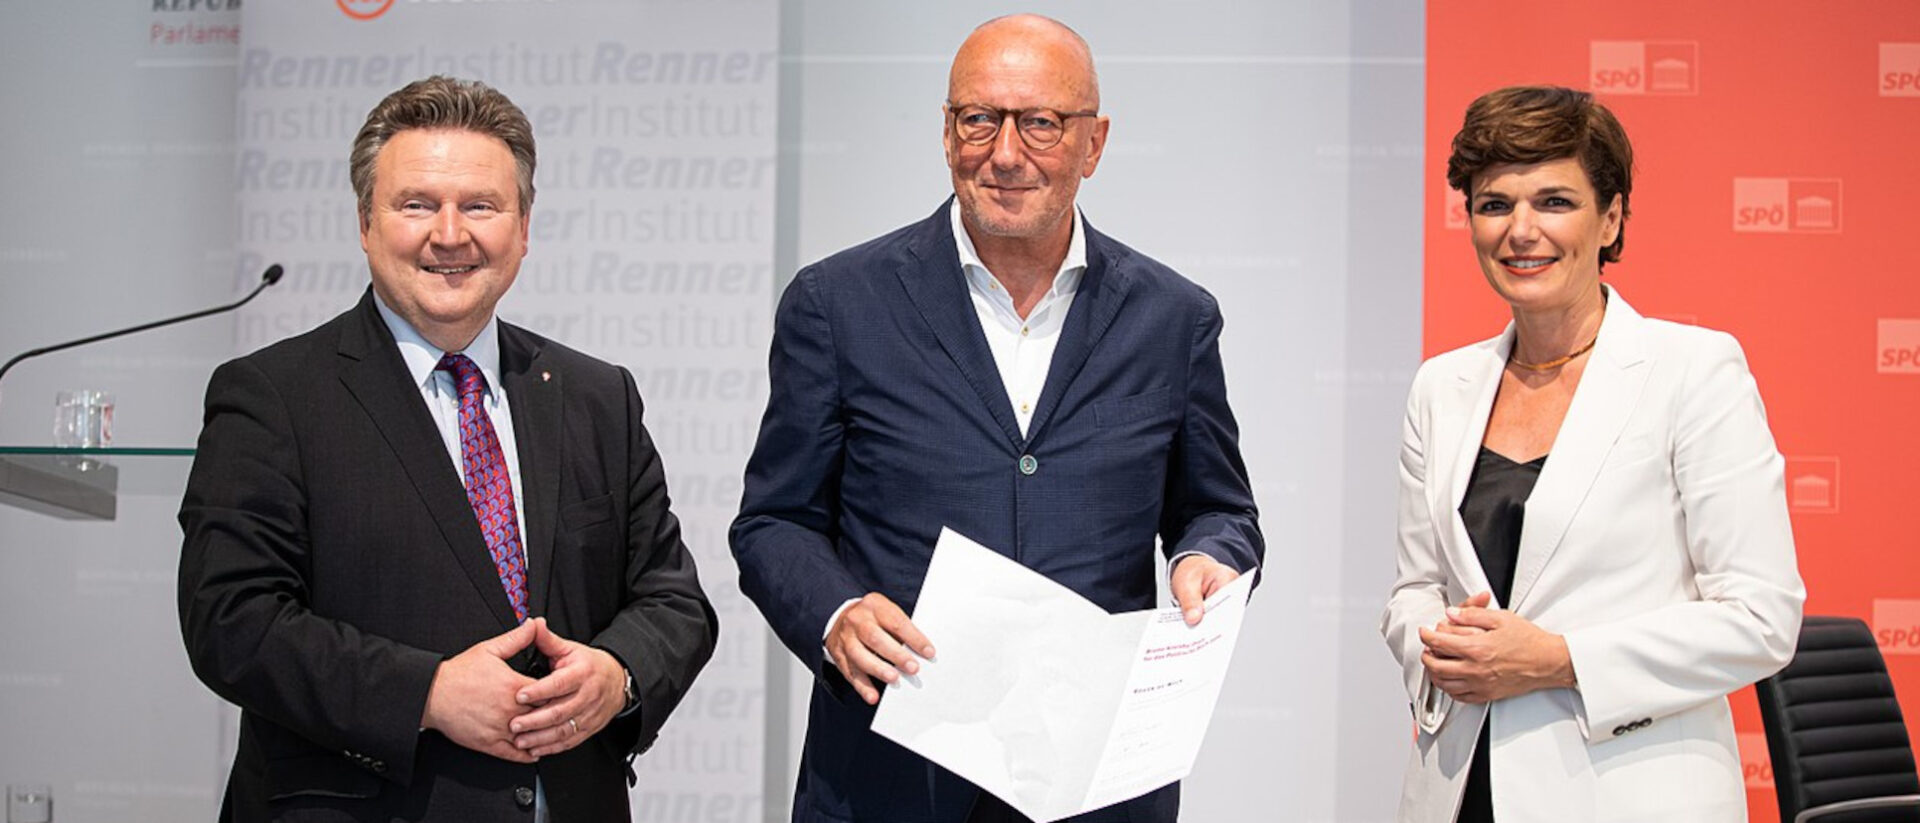 2020 wurde der Bruno-Kreisky-Preis für das politische Buch des Jahres an Roger de Weck verliehen. Paul Lendvai und Ruth Wodak wurden auch ausgezeichnet. Foto: SPÖ/Astrid Knie.